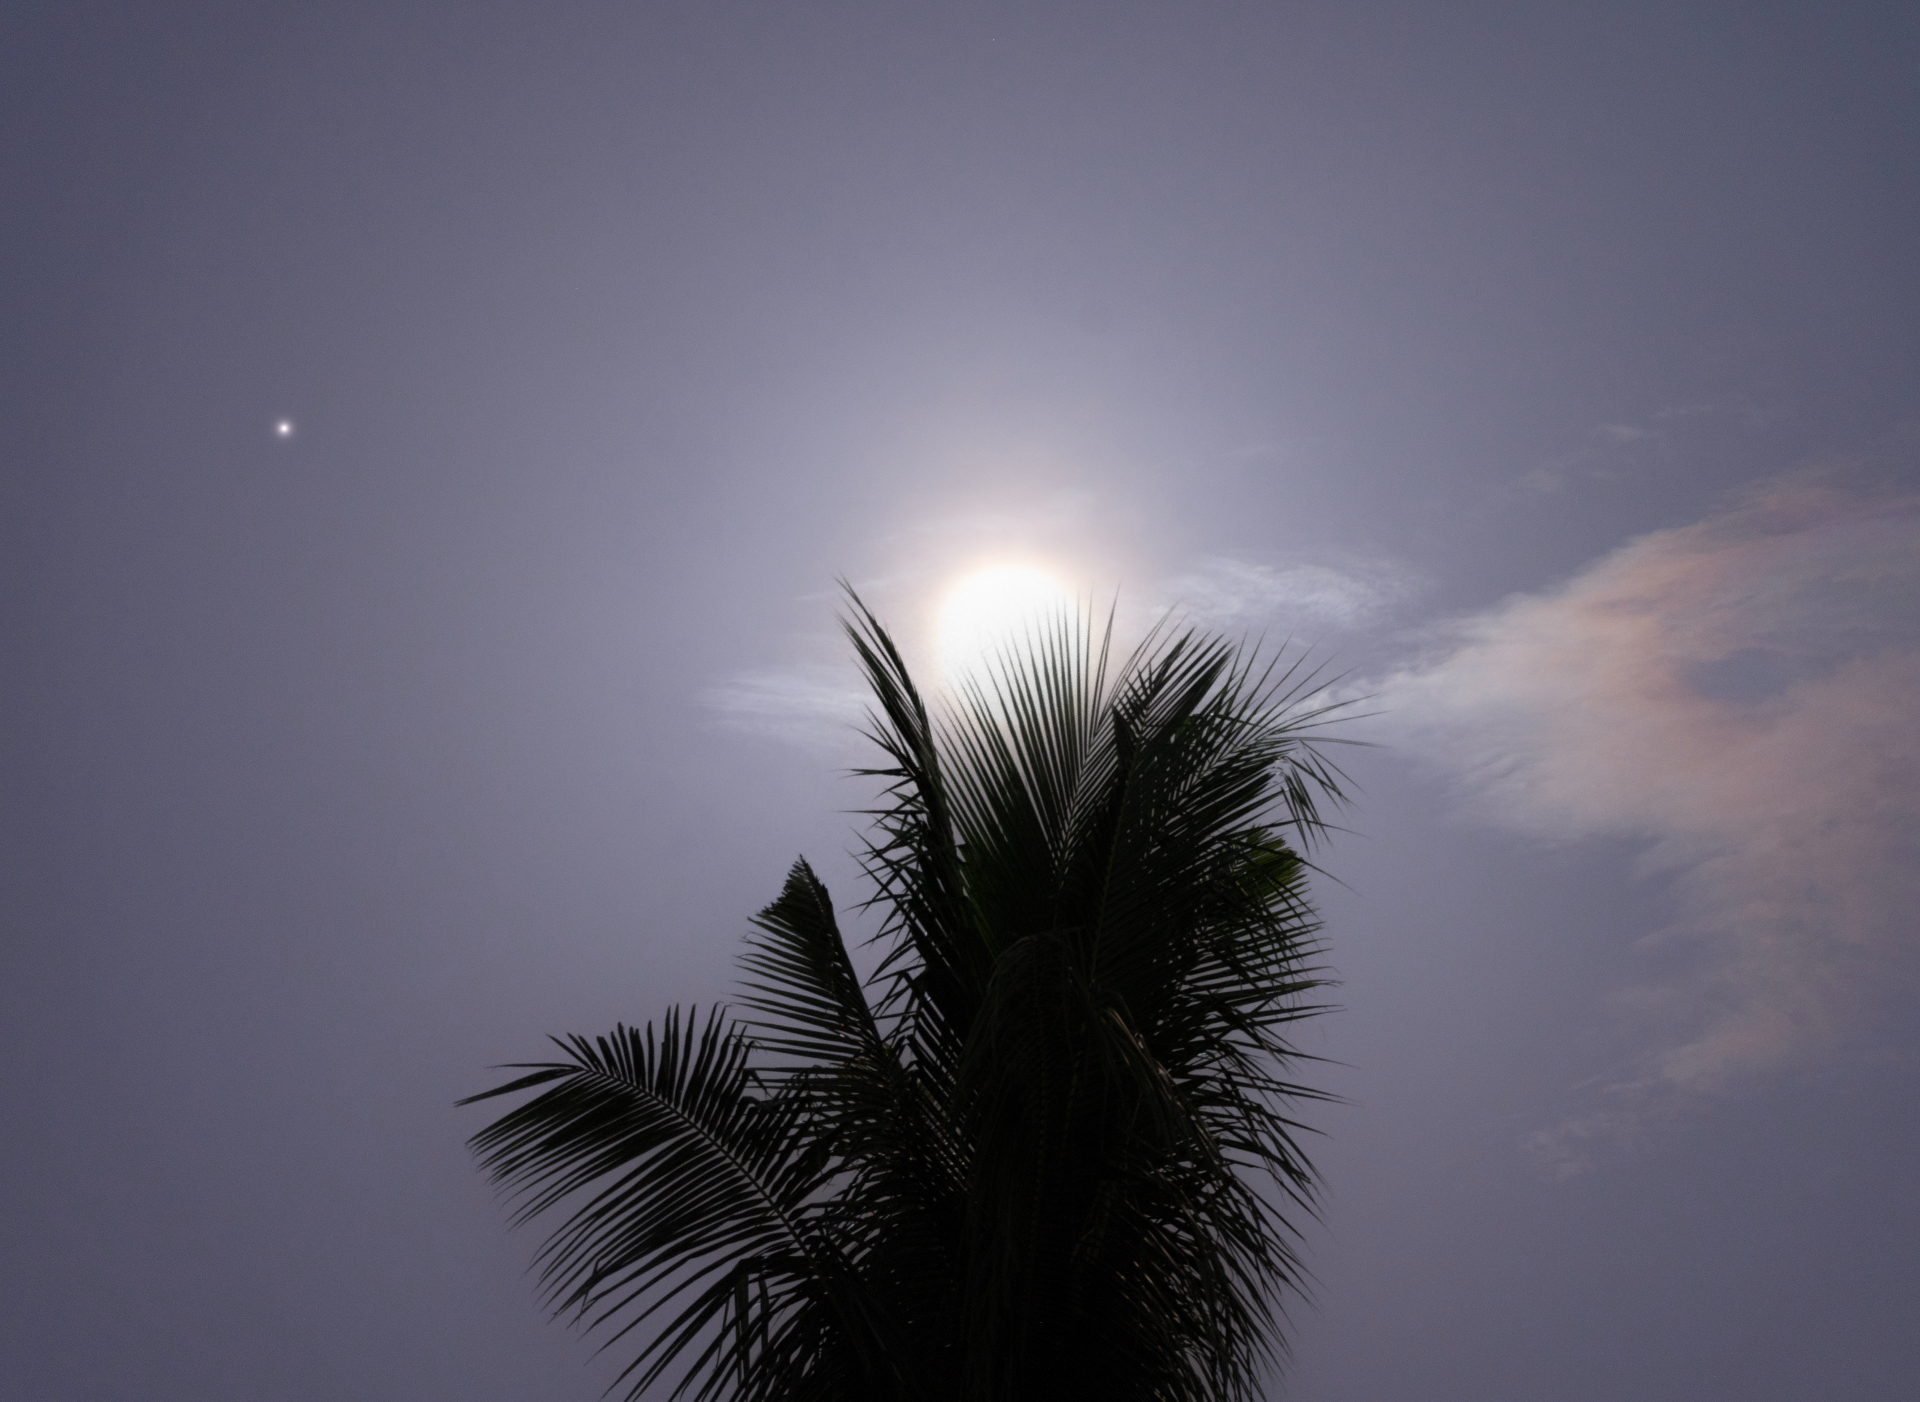 La gigantesca luna azul brilla detrás de una palmera, con el pequeño punto de Saturno visible a la izquierda de la luna.